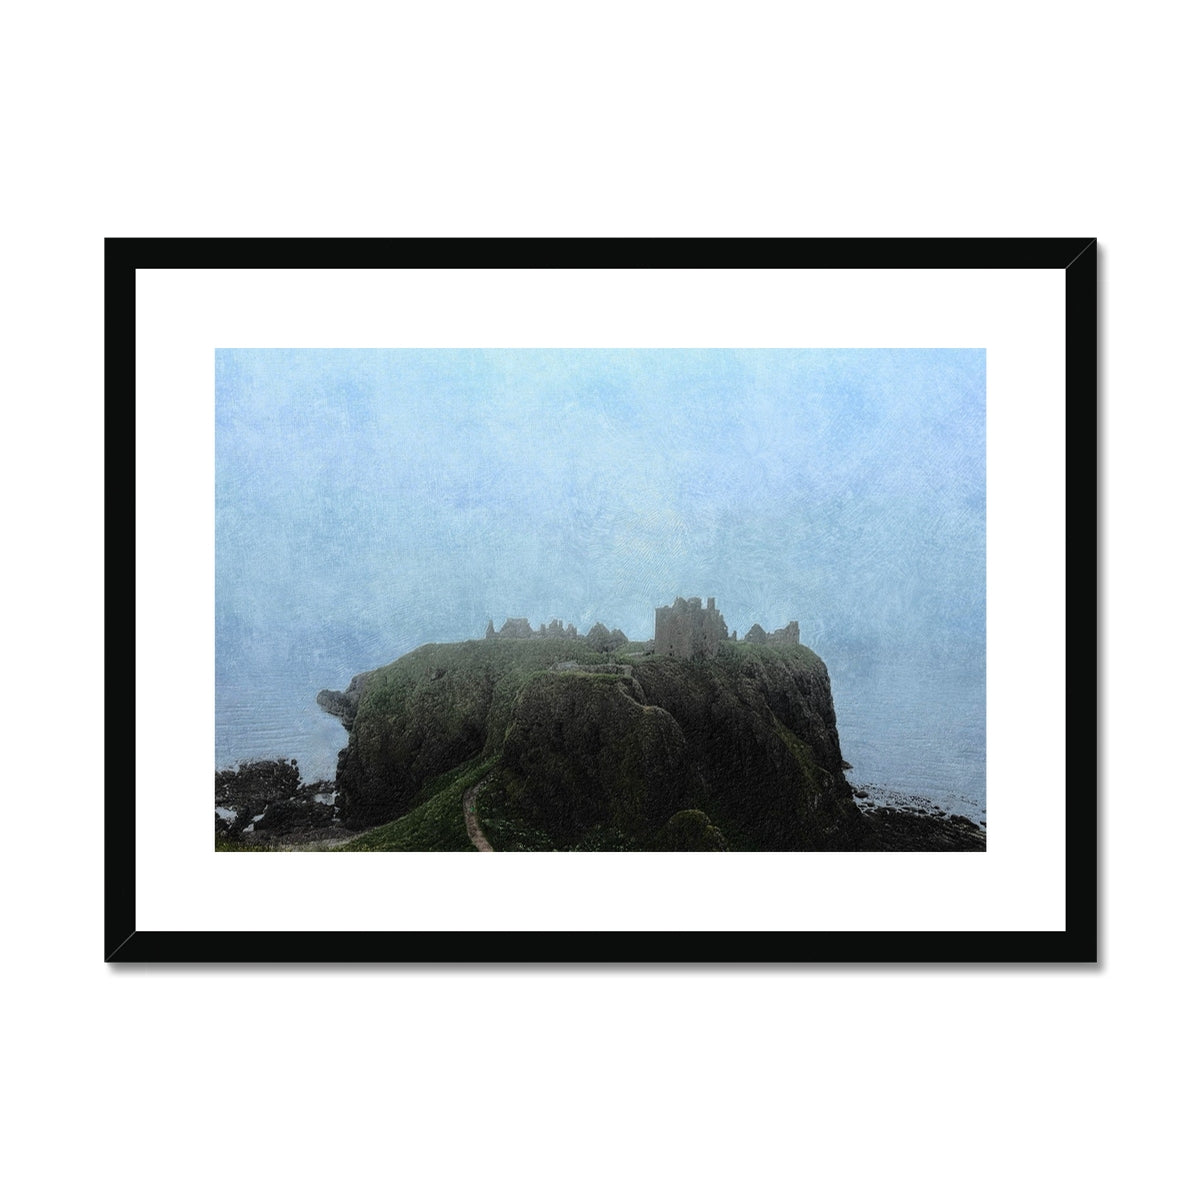 Dunnottar Castle Mist Painting | Framed & Mounted Prints From Scotland-Framed & Mounted Prints-Scottish Castles Art Gallery-A2 Landscape-Black Frame-Paintings, Prints, Homeware, Art Gifts From Scotland By Scottish Artist Kevin Hunter